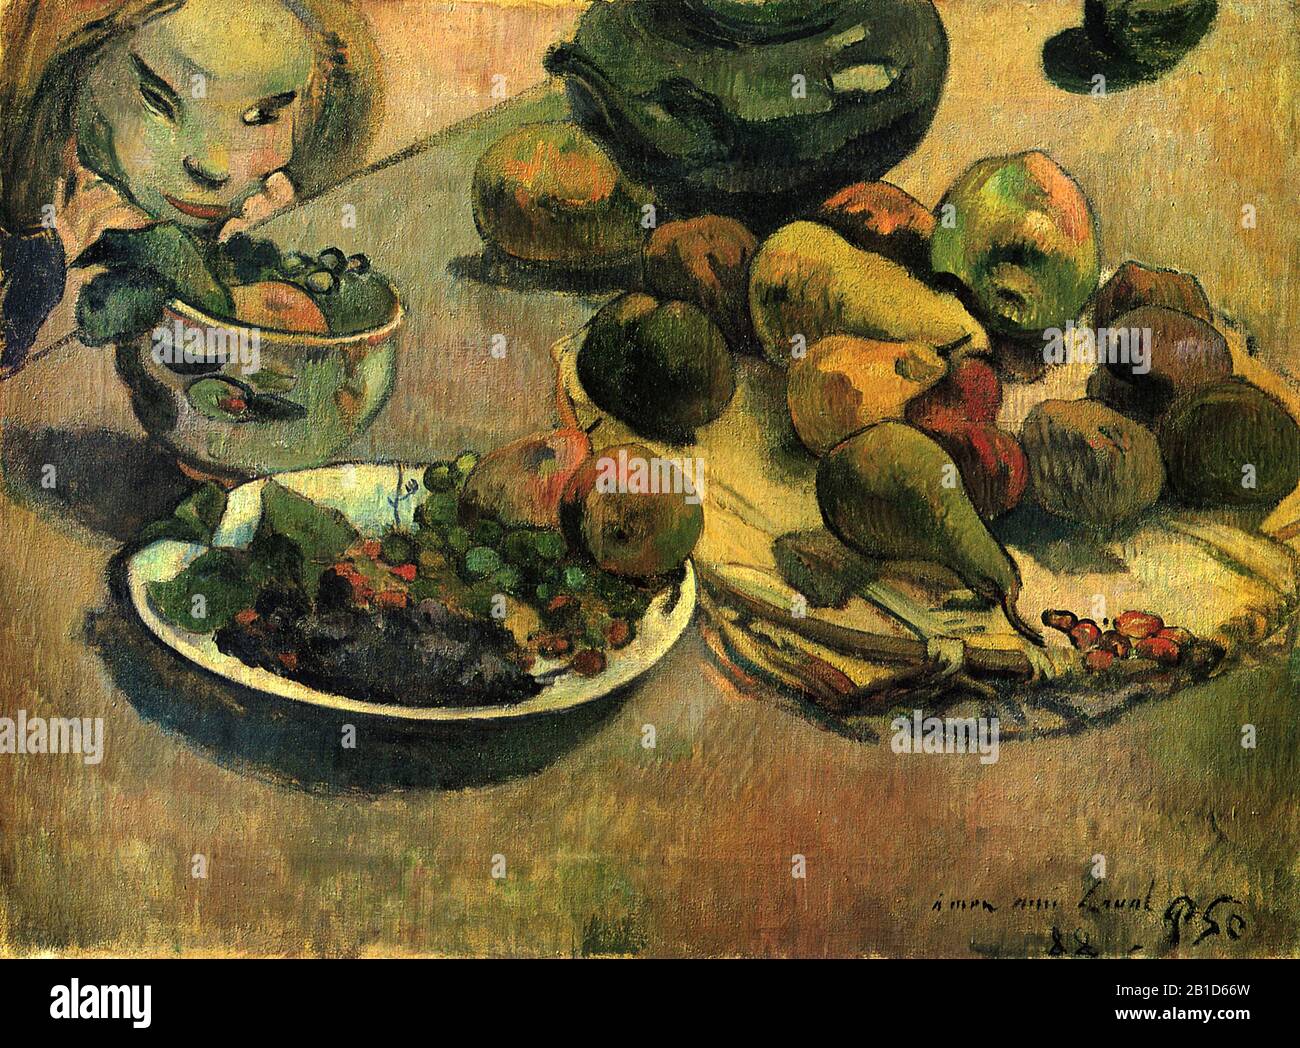 Still Life with Fruit (1888) 19th Century Painting by Paul Gauguin - immagine Ad Altissima risoluzione e qualità Foto Stock